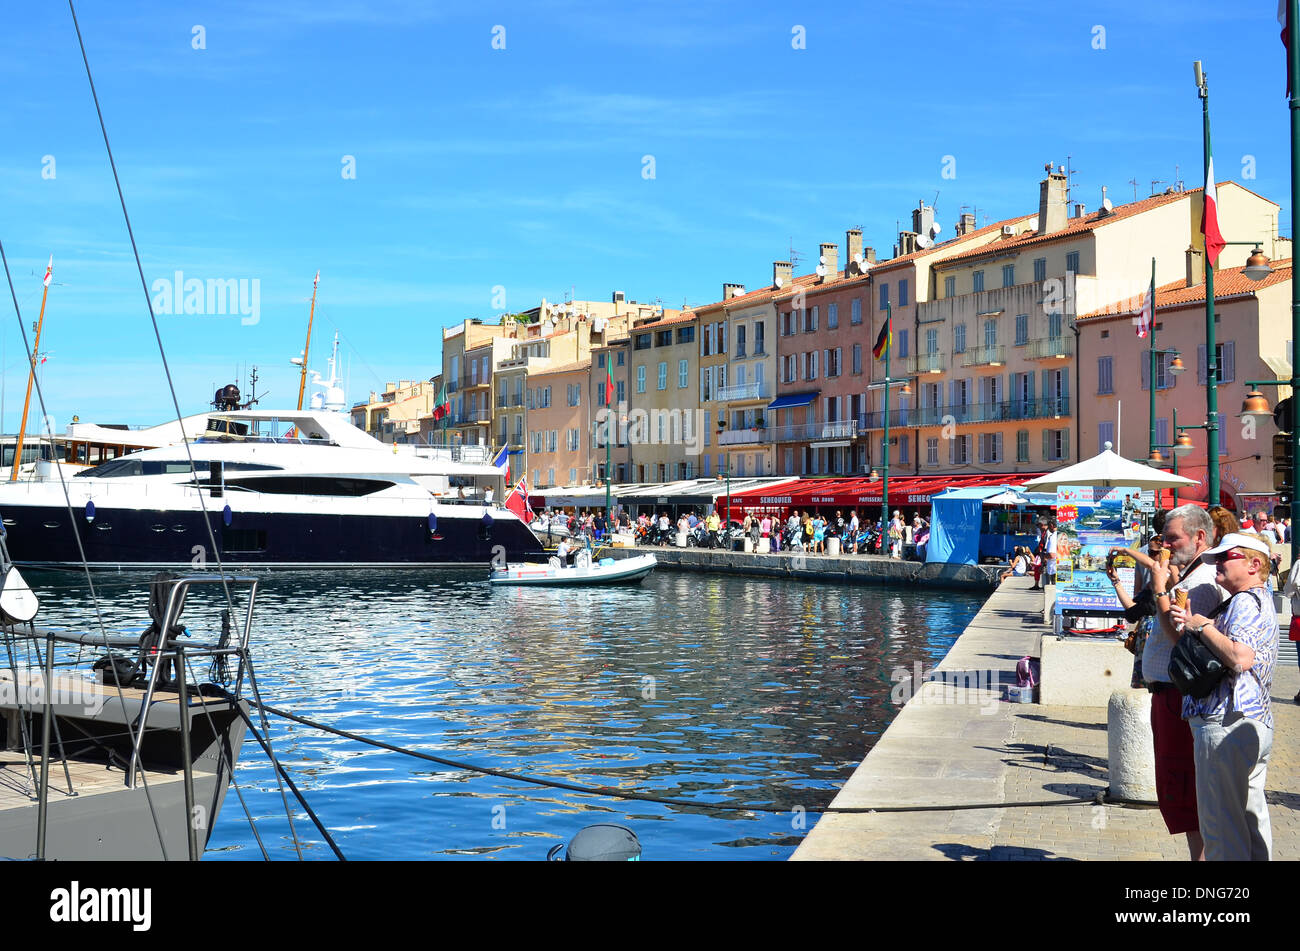 Port of Saint-Tropez, cote azur,  France Stock Photo